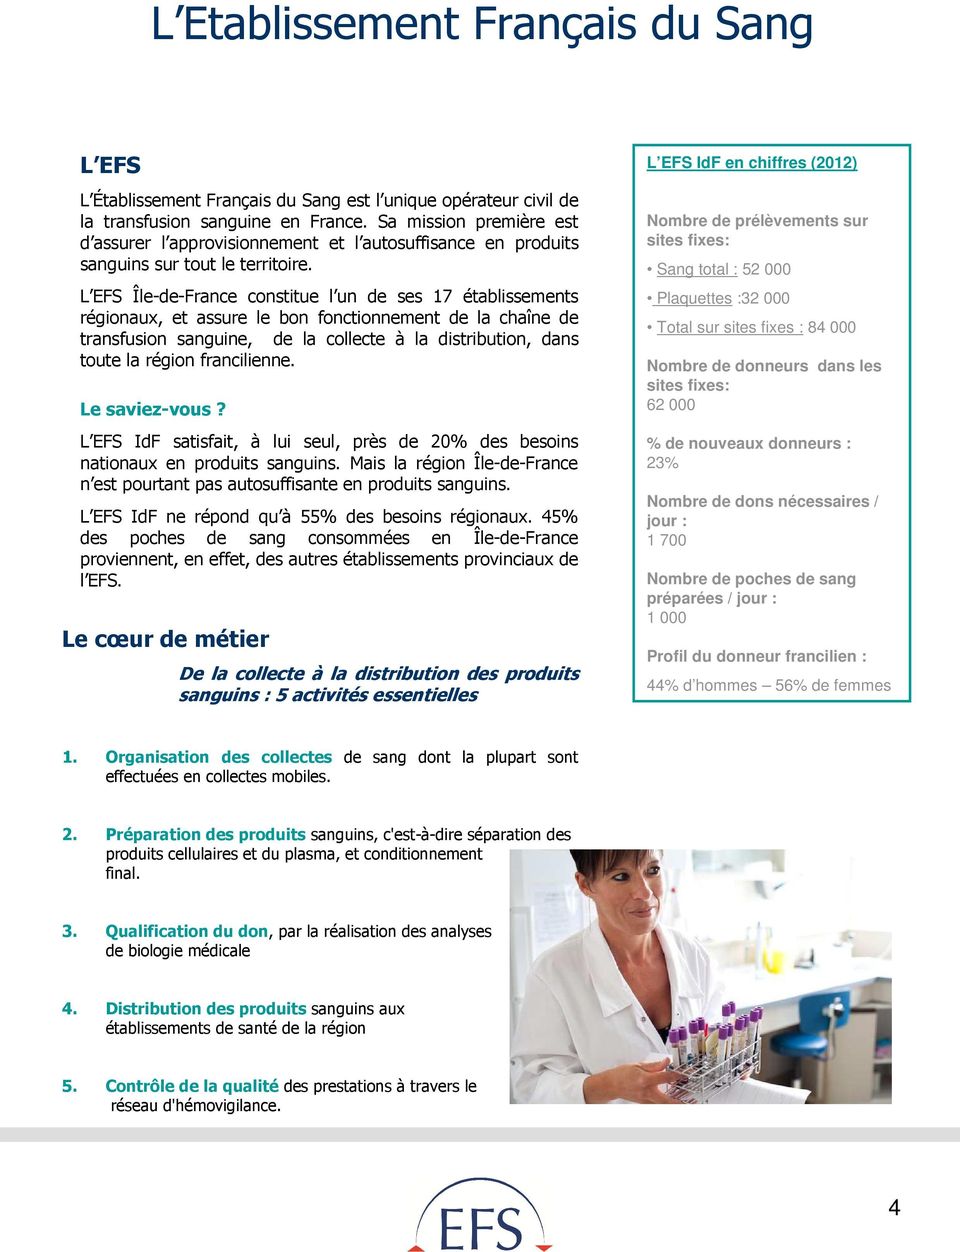 L EFS Île-de-France constitue l un de ses 17 établissements régionaux, et assure le bon fonctionnement de la chaîne de transfusion sanguine, de la collecte à la distribution, dans toute la région